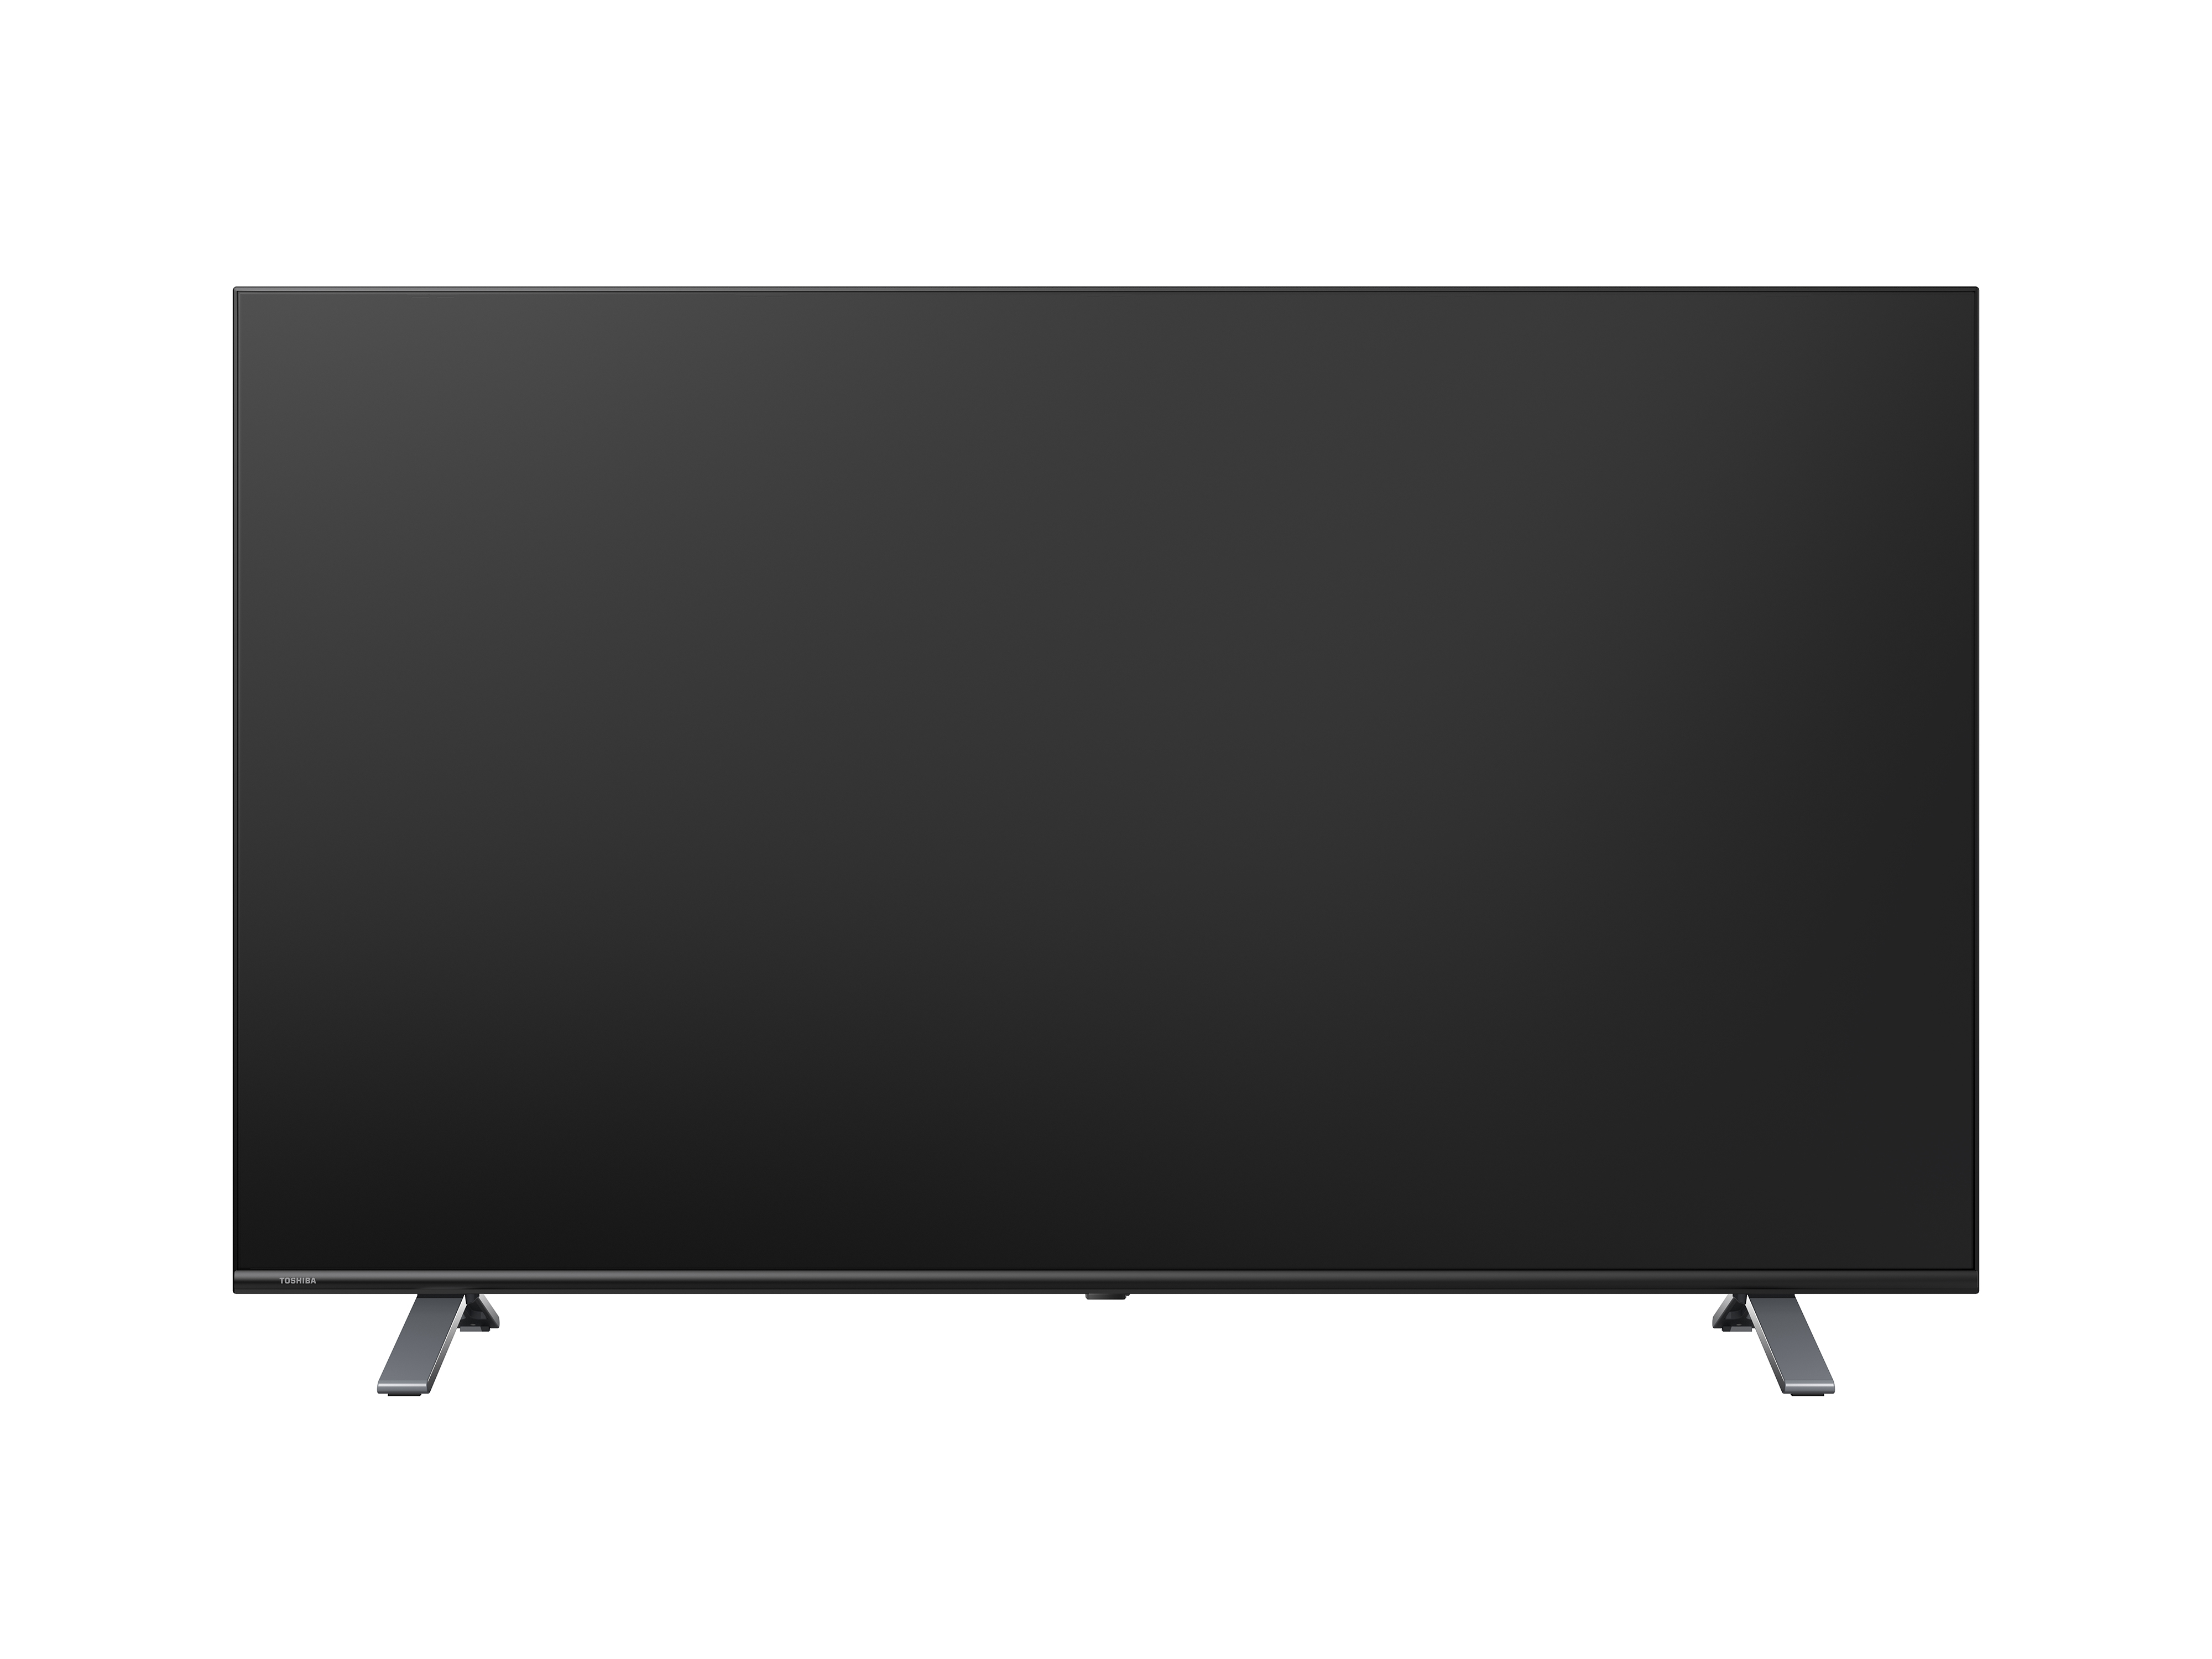 SMART 4K - GOOGLE TV TOSHIBA 75 inch (75C350LP) – Chống ánh sáng xanh - Tìm kiếm bằng giọng nói - Tràn viền - Công nghệ tái tạo màu tiên tiến - Âm thanh Dolby Audio hiện đại - Loa 24W - Wifi 2.4/5GHz - Hàng chính hãng